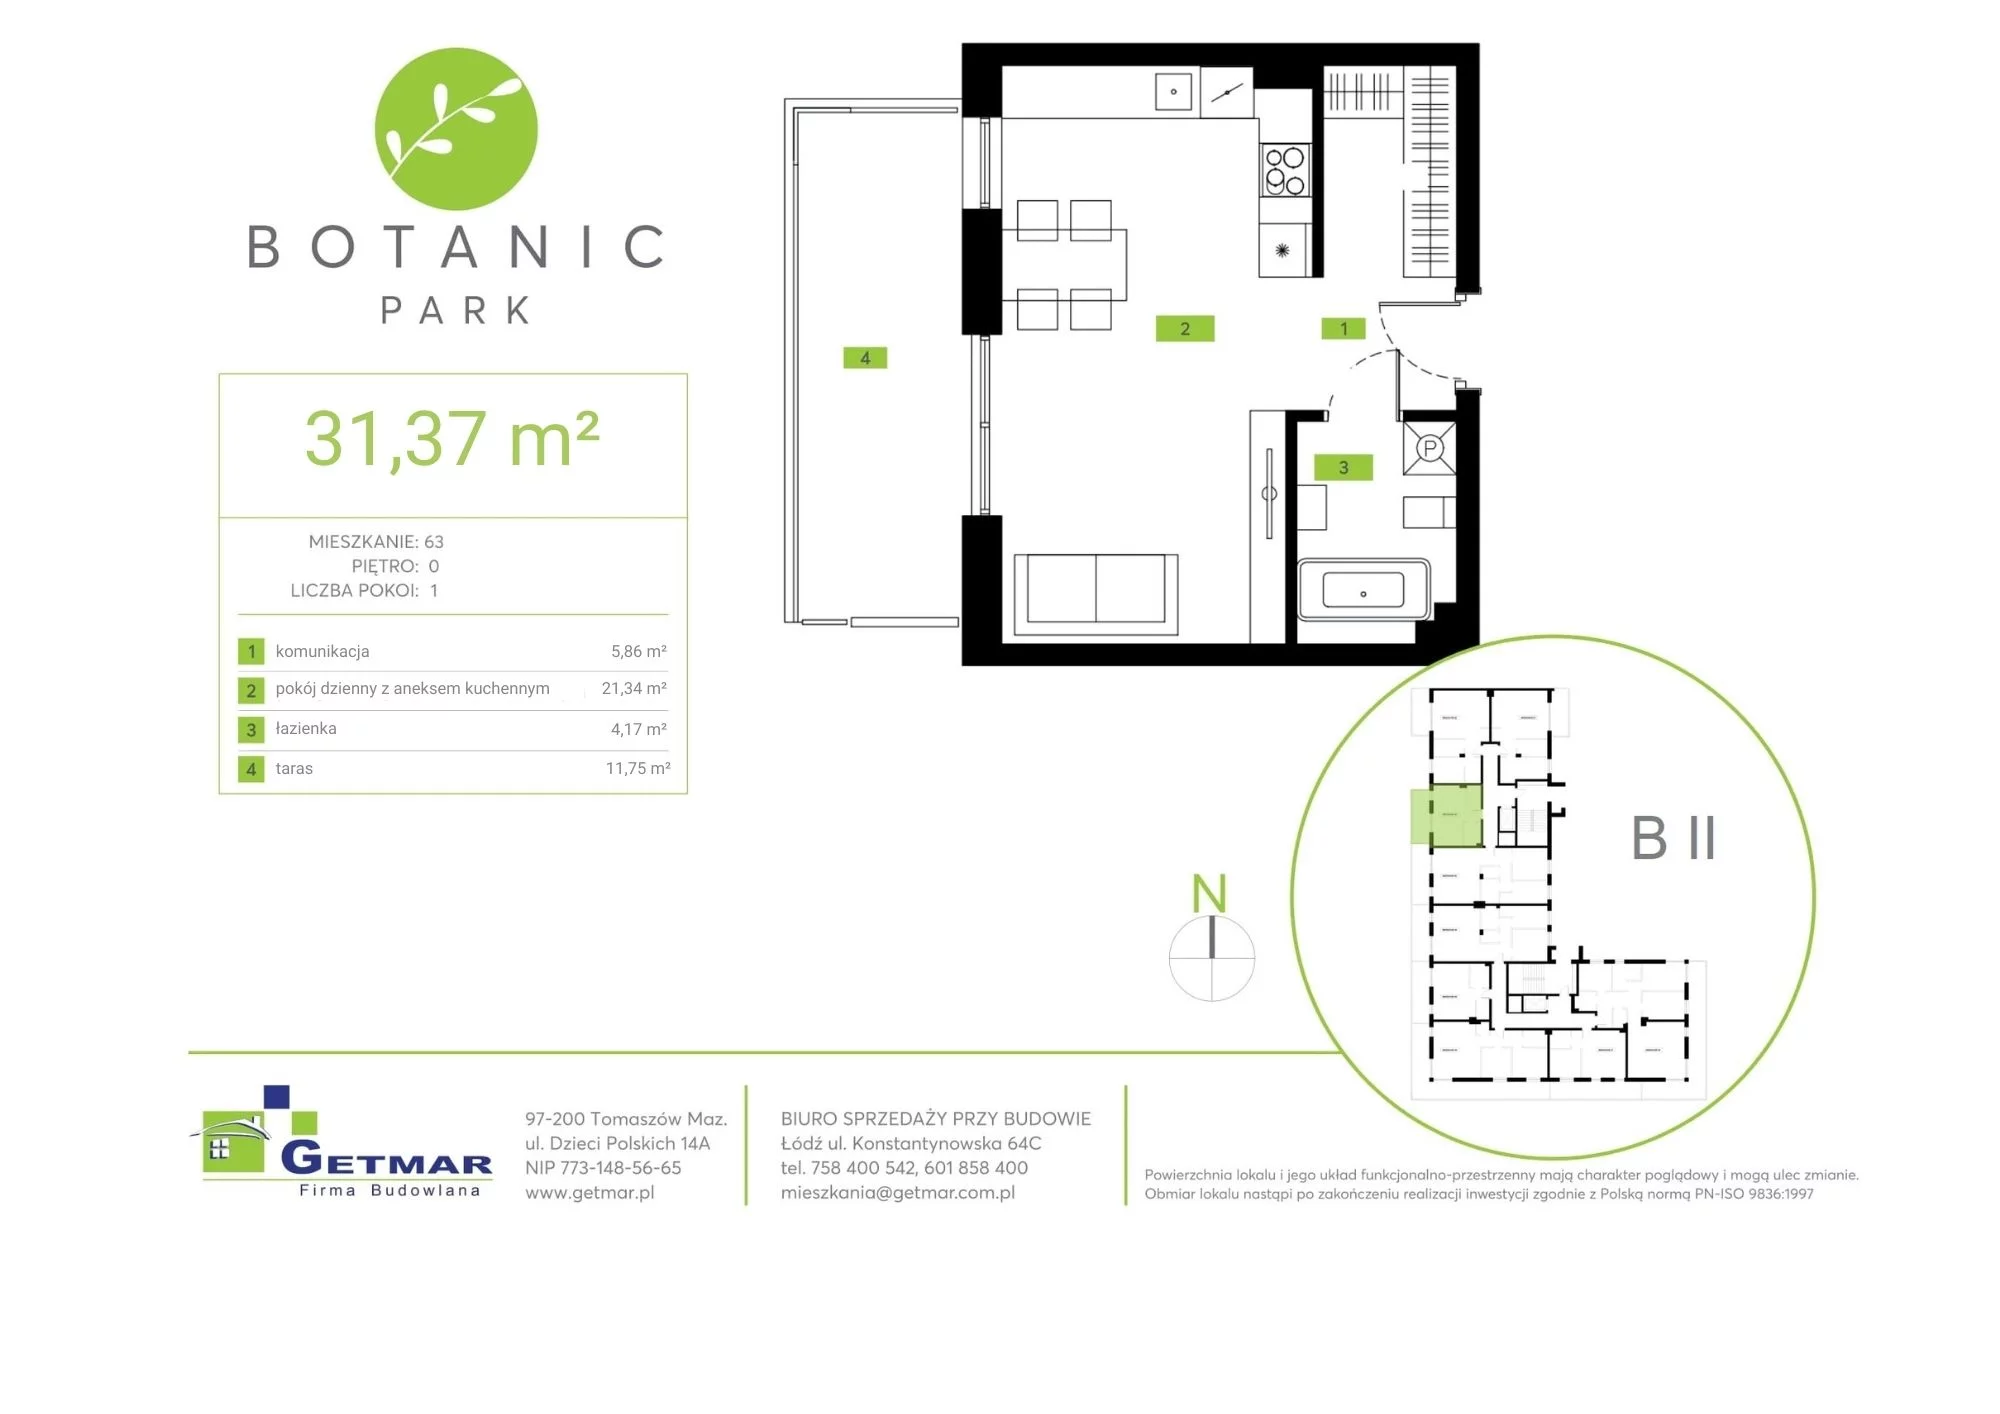 Mieszkanie 31,37 m², parter, oferta nr 63, Botanic Park, Łódź, Polesie, Złotno, ul. Konstantynowska 64c